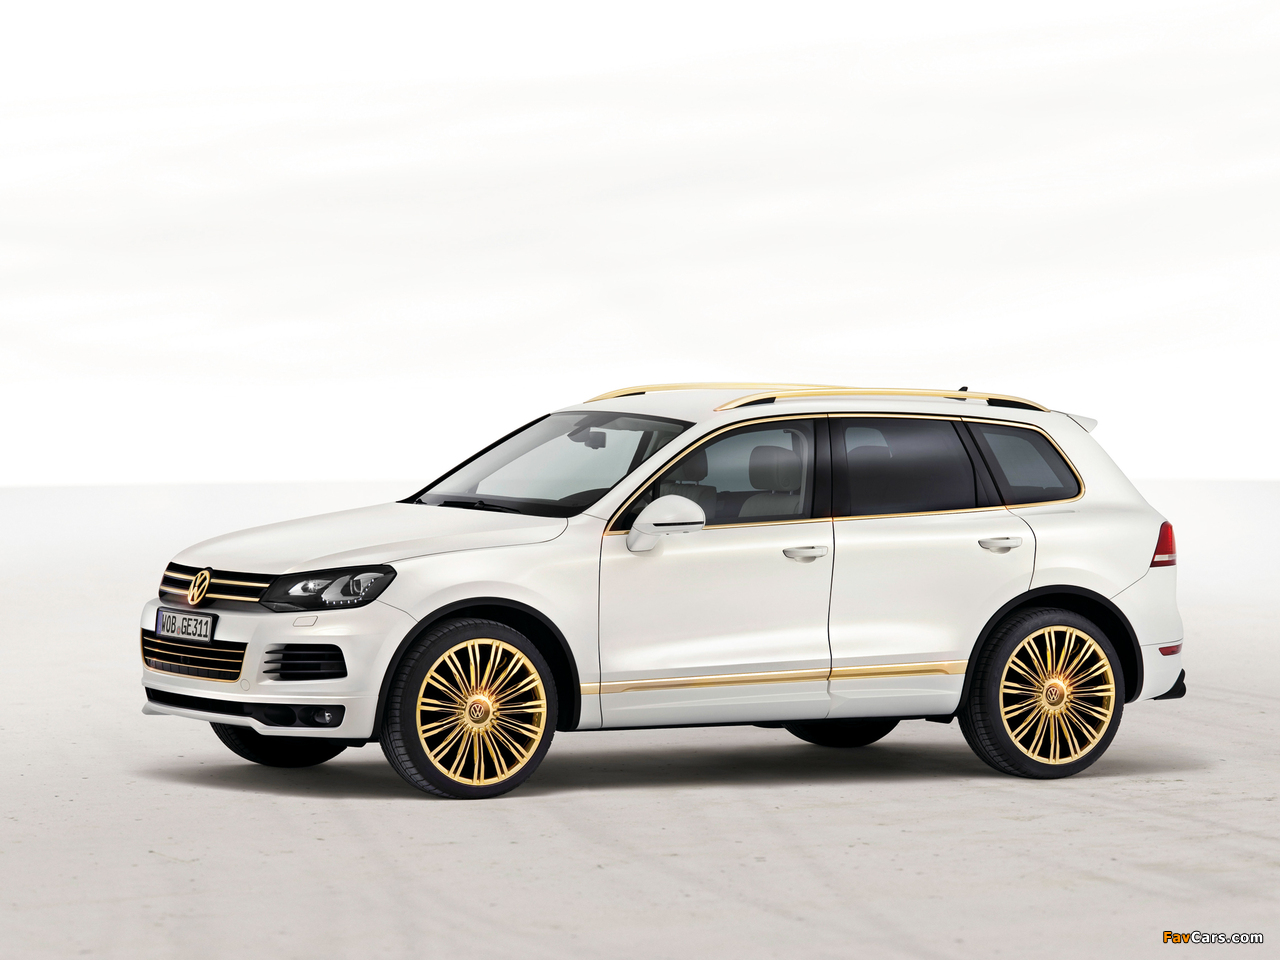 Volkswagen Touareg V8 TDI Gold Edition Concept 2011 photos (1280 x 960)